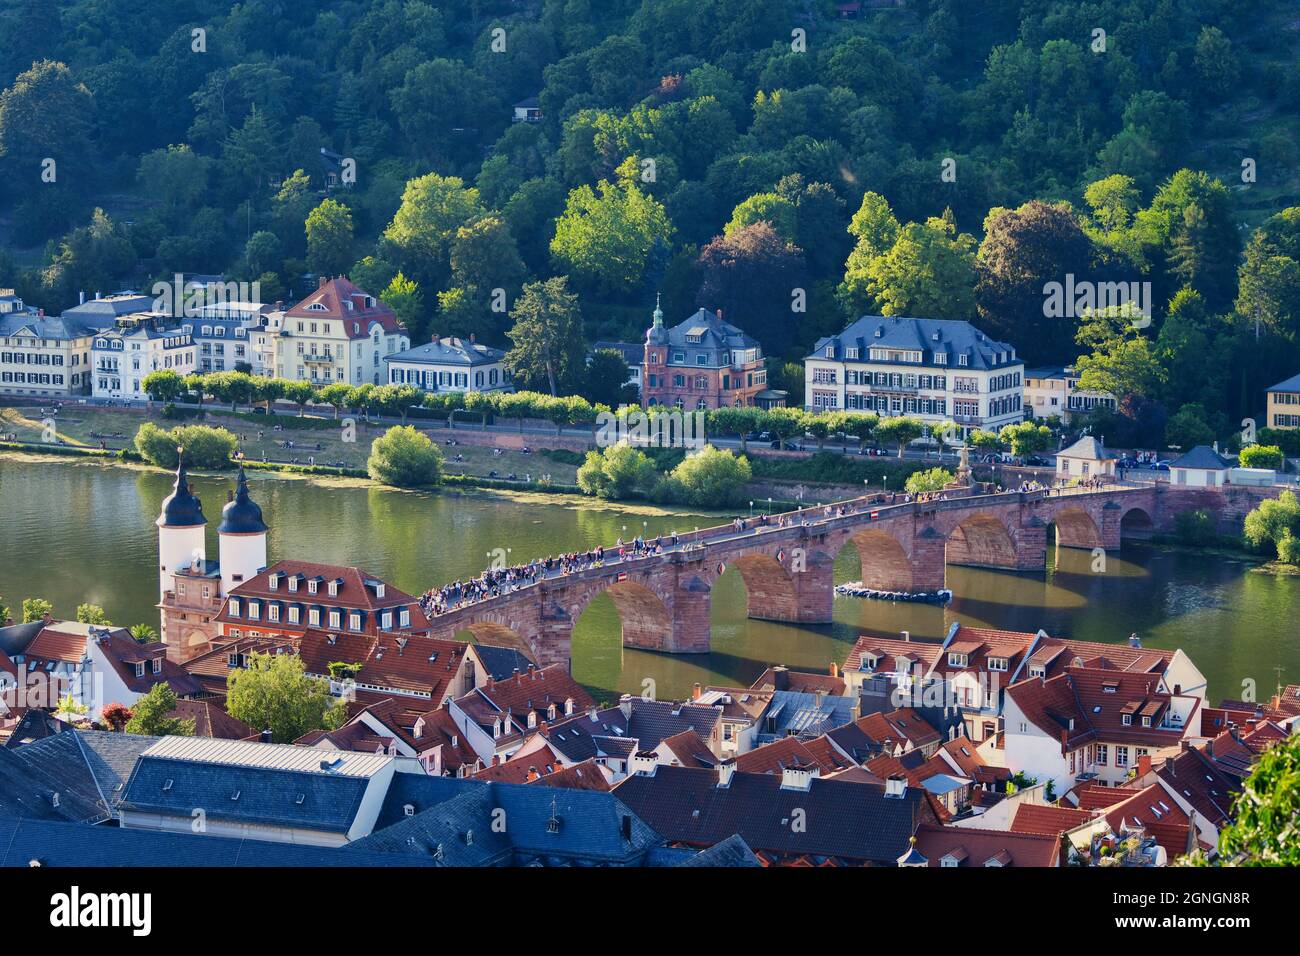 Die Altstadt von Heidelberg mit der Alten Brücke, dem Neckar und dem Brückentor. Blick vom Schloss in der Abendsonne. Deutschland. Stockfoto